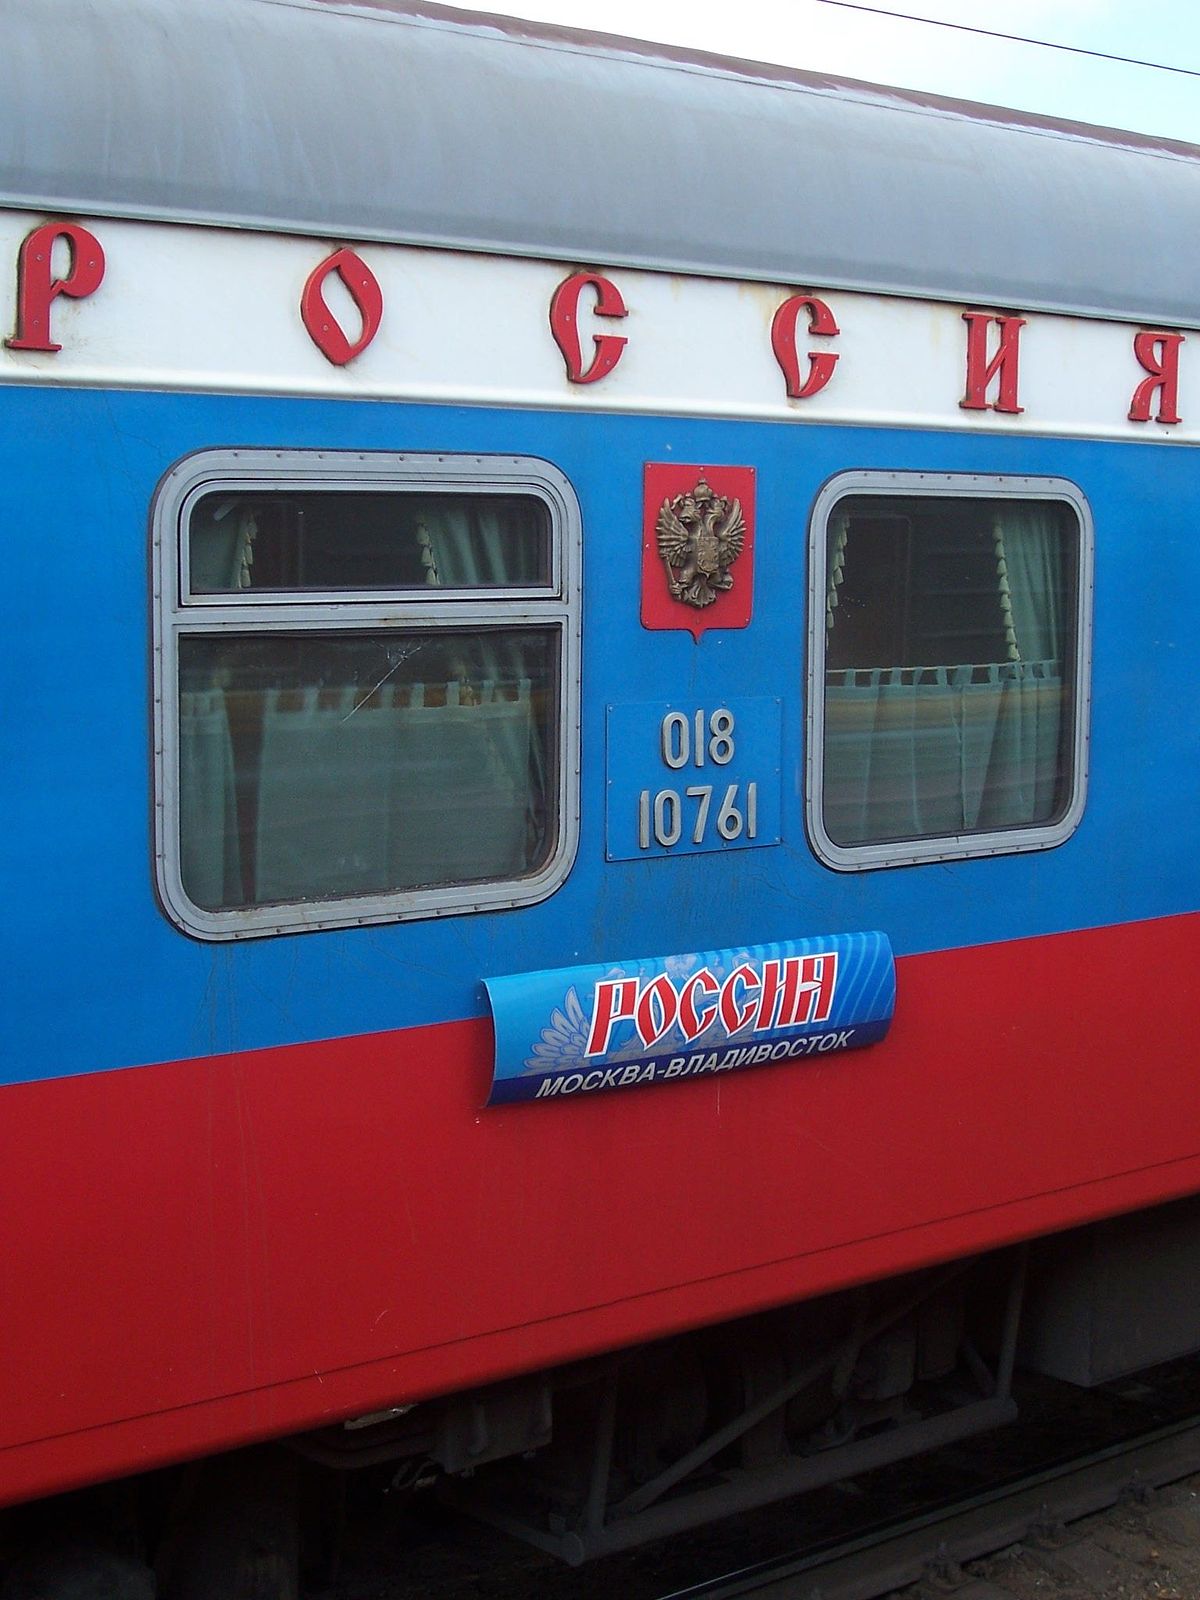 ロシア 列車 Wikipedia